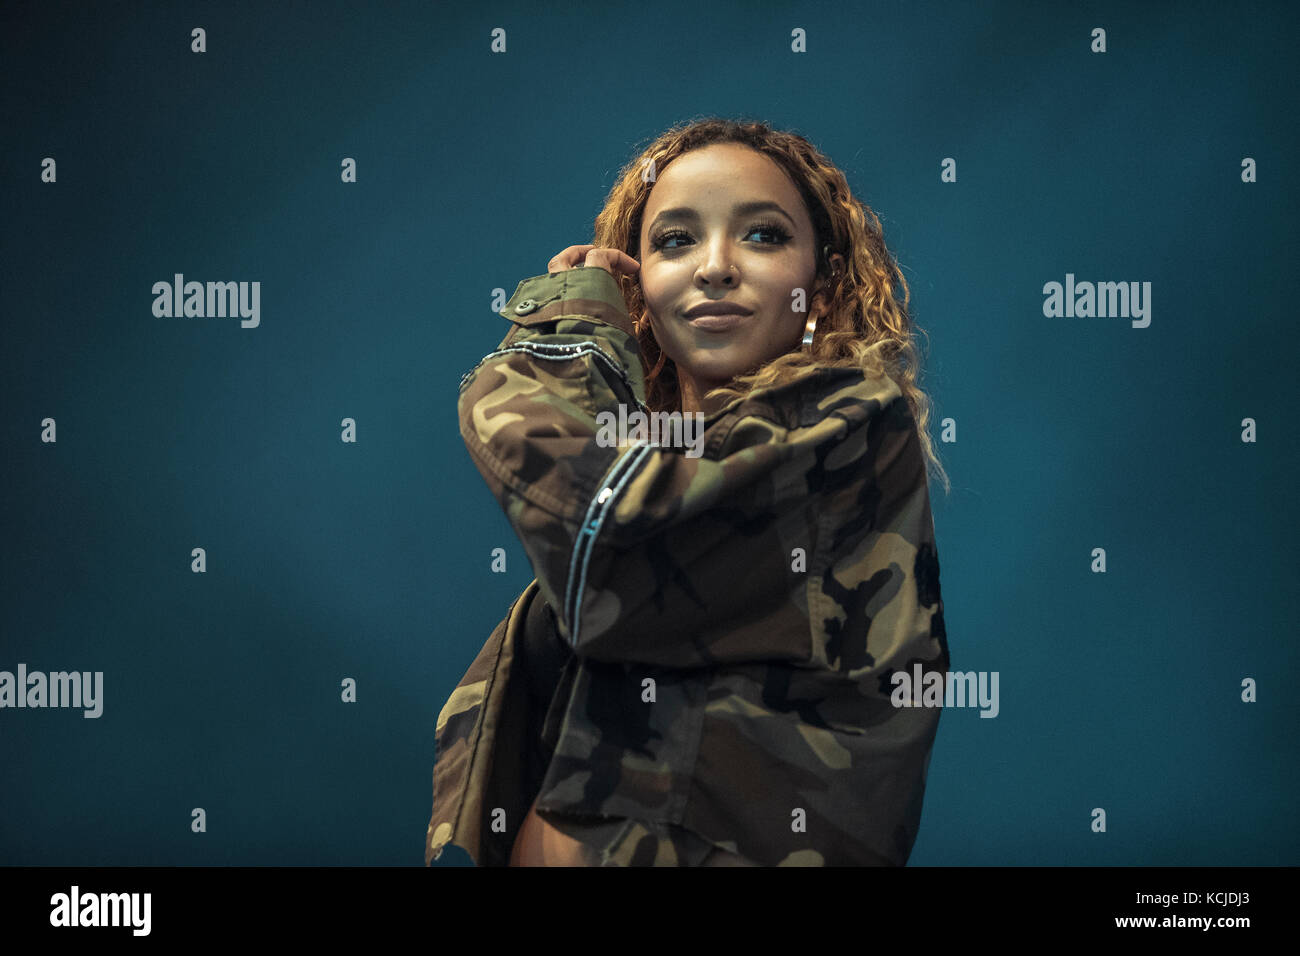 Danemark, Roskilde – 30 juin 2017. Le chanteur, compositeur et danseur américain Tinashe interprète un concert en direct pendant le festival de musique danois Roskilde Festival 2017. Banque D'Images